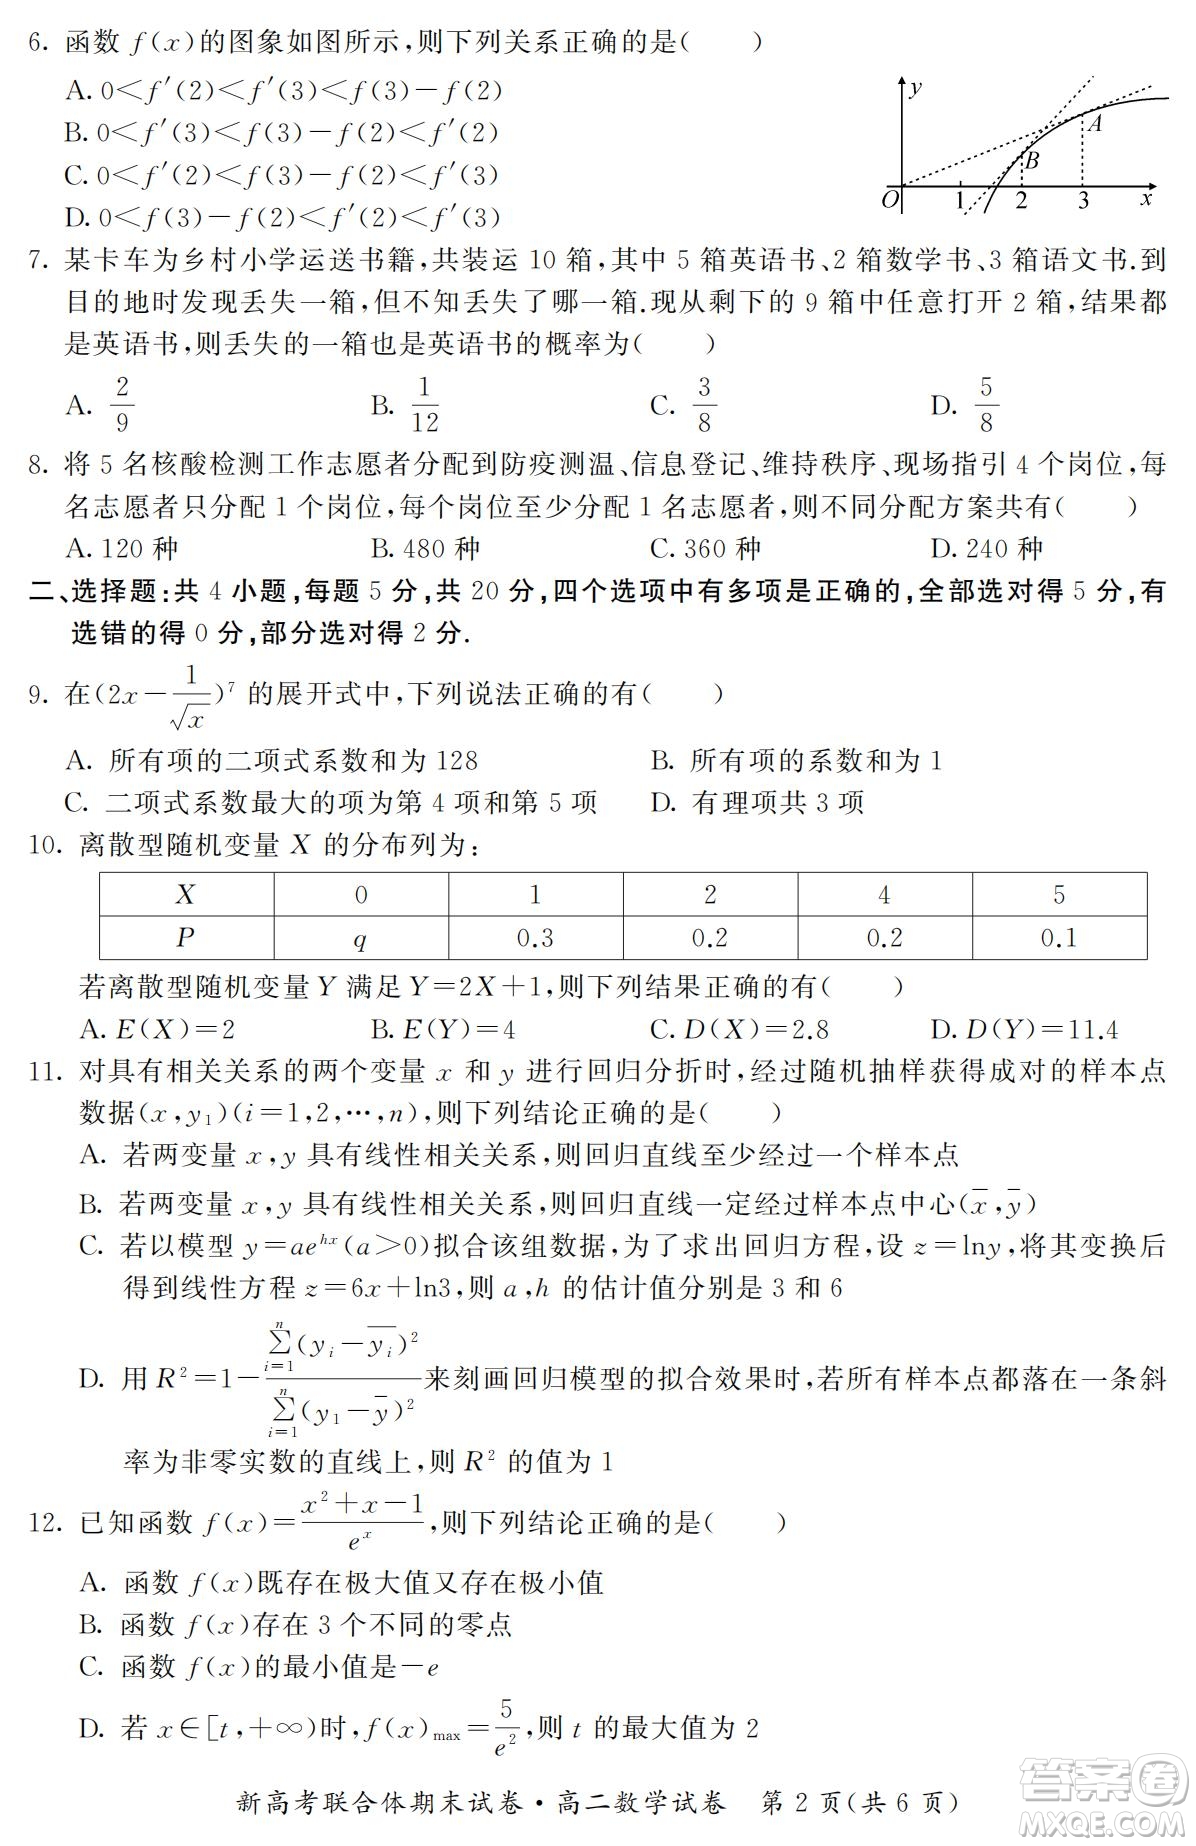 湖北省武汉市2021-2022学年度第二学期新高考联合体期末试卷高二数学试题及答案